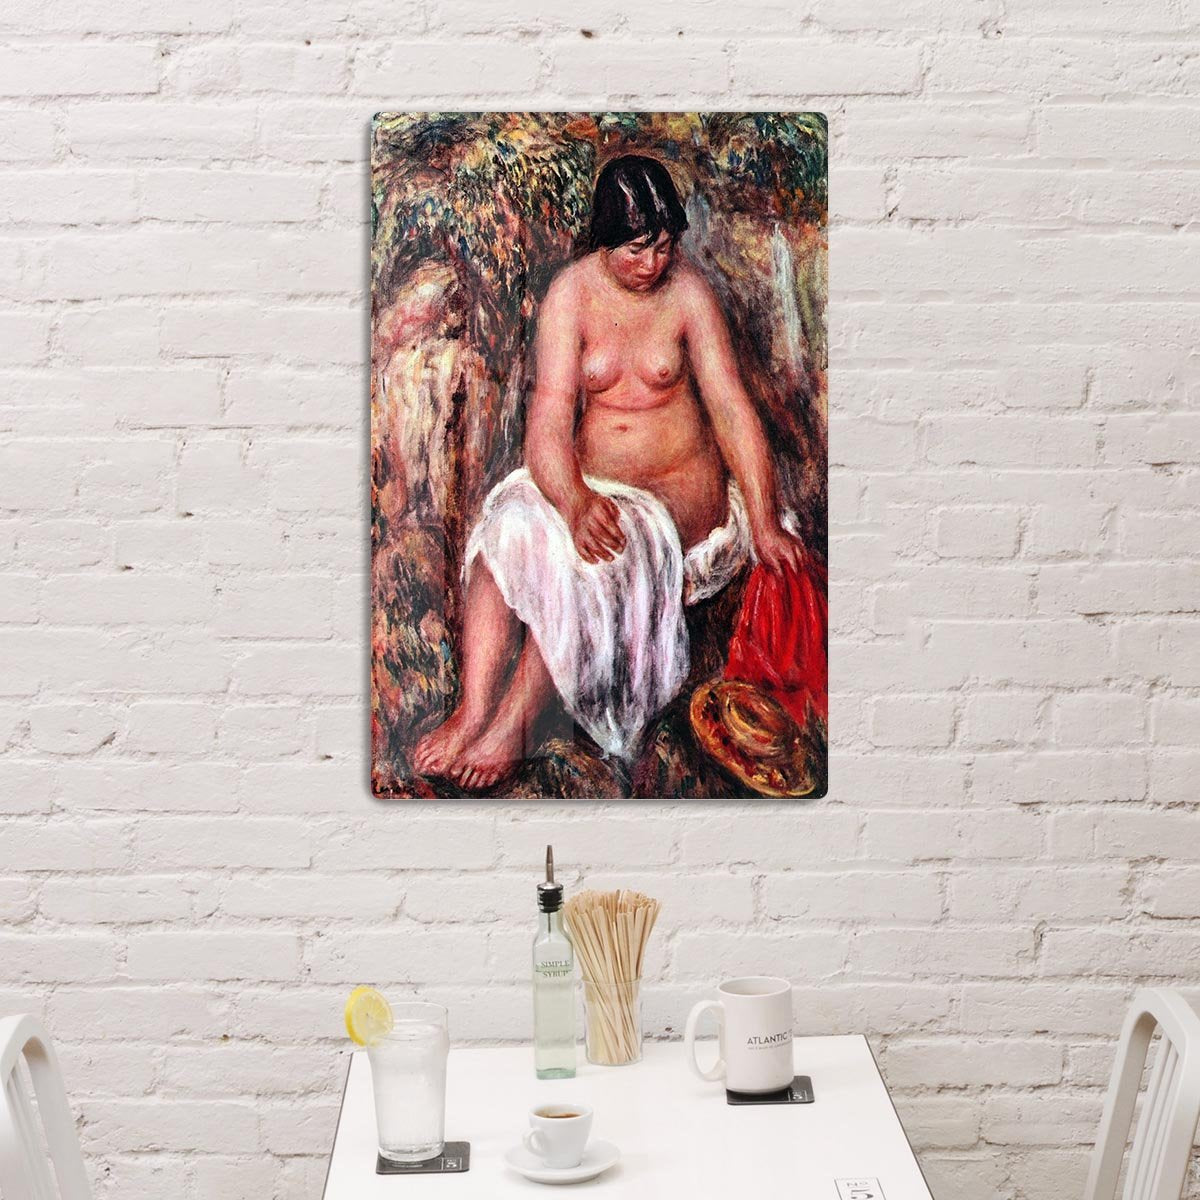 Nude with Straw by Renoir by Renoir HD Metal Print